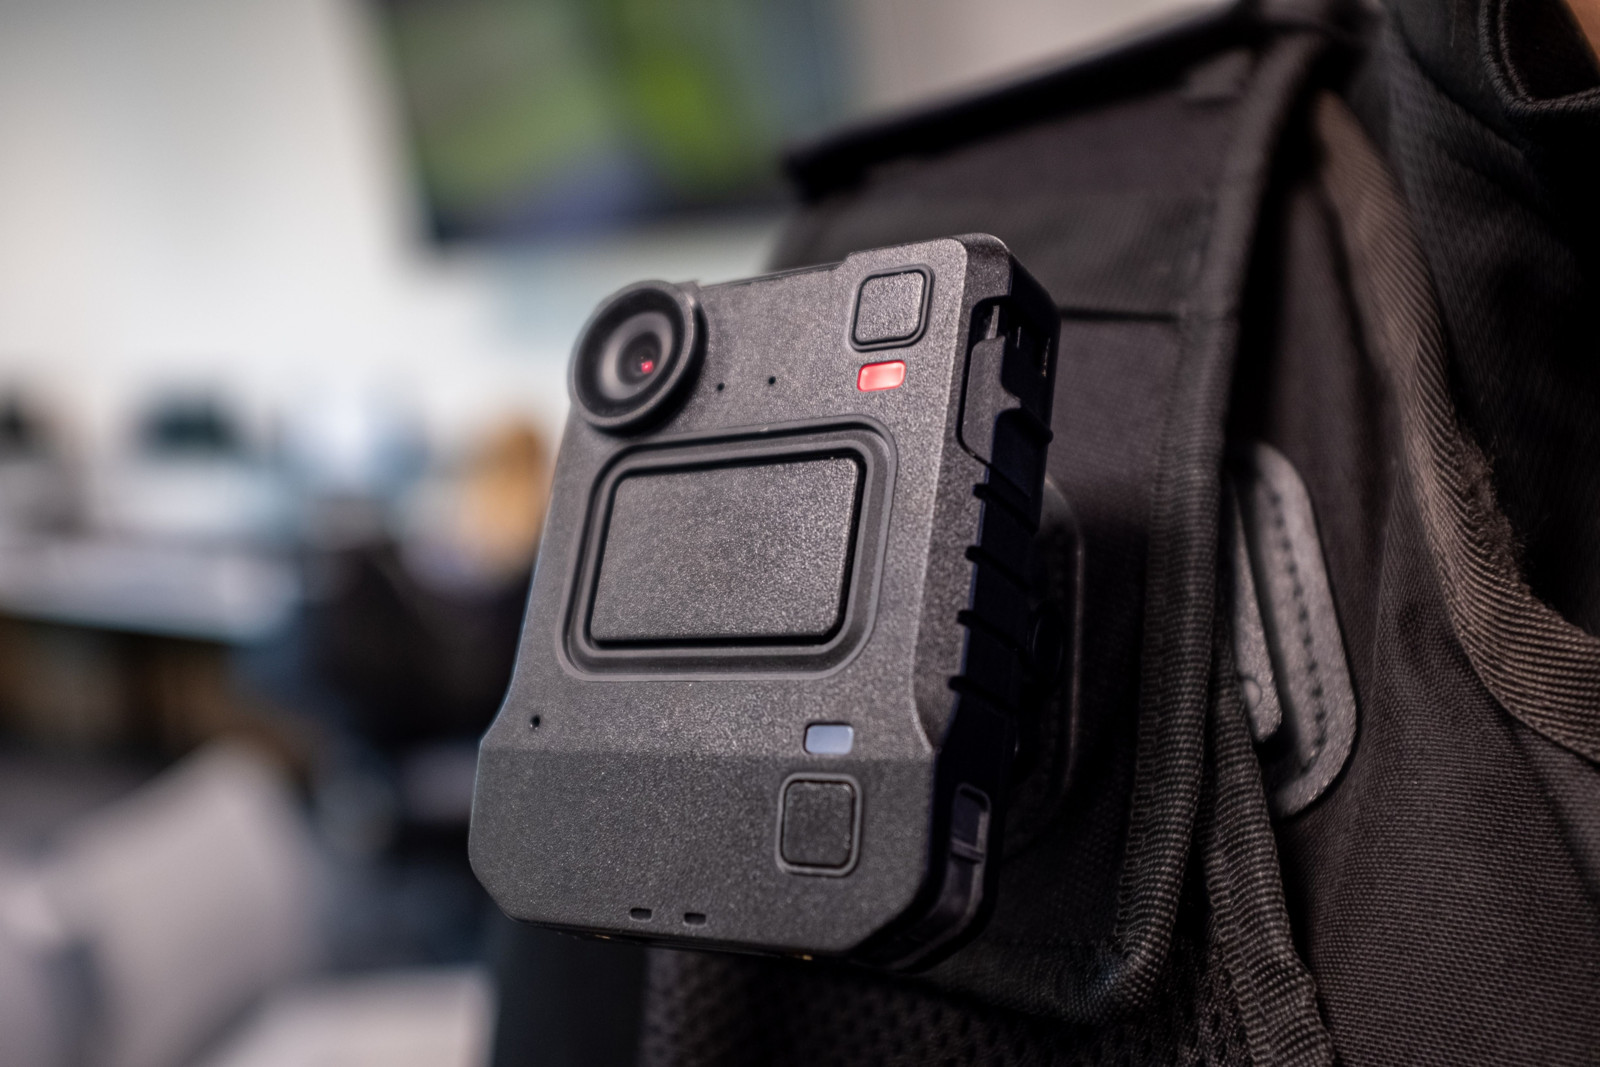 Die Bodycams sollen der Polizei dabei helfen, potenziell gefährliche Situationen zu deeskalieren sowie die Sicherheit und Transparenz im Einsatz zu erhöhen.